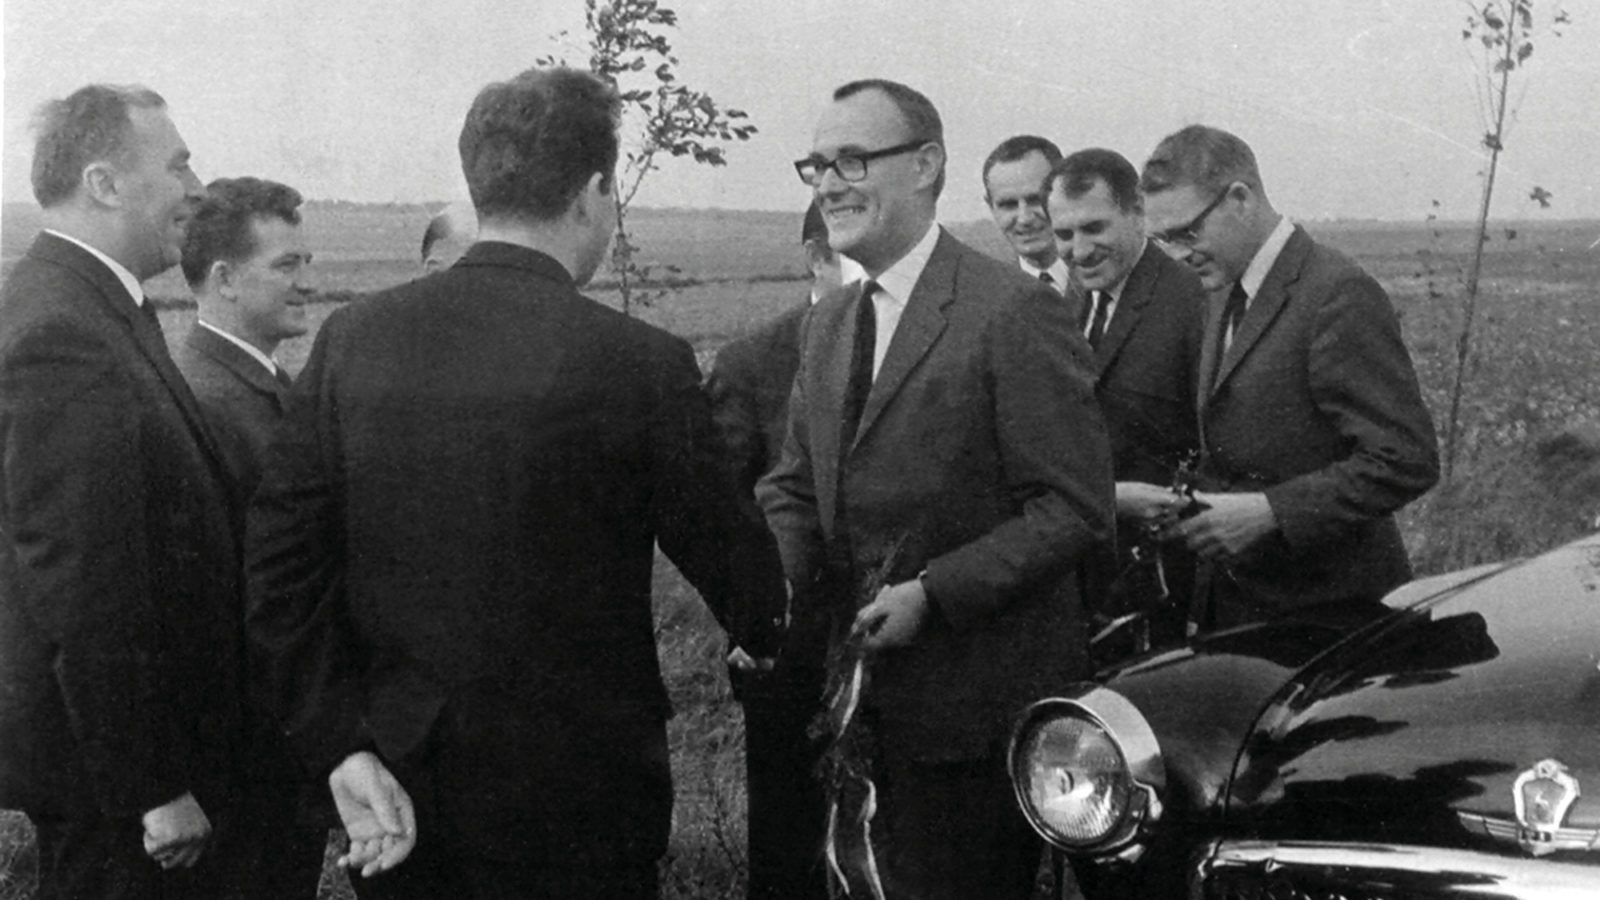 Grupp leende män i mörka kostymer står utomhus bredvid 1960-talsbil, en av männen skakar hand med Ingvar Kamprad.